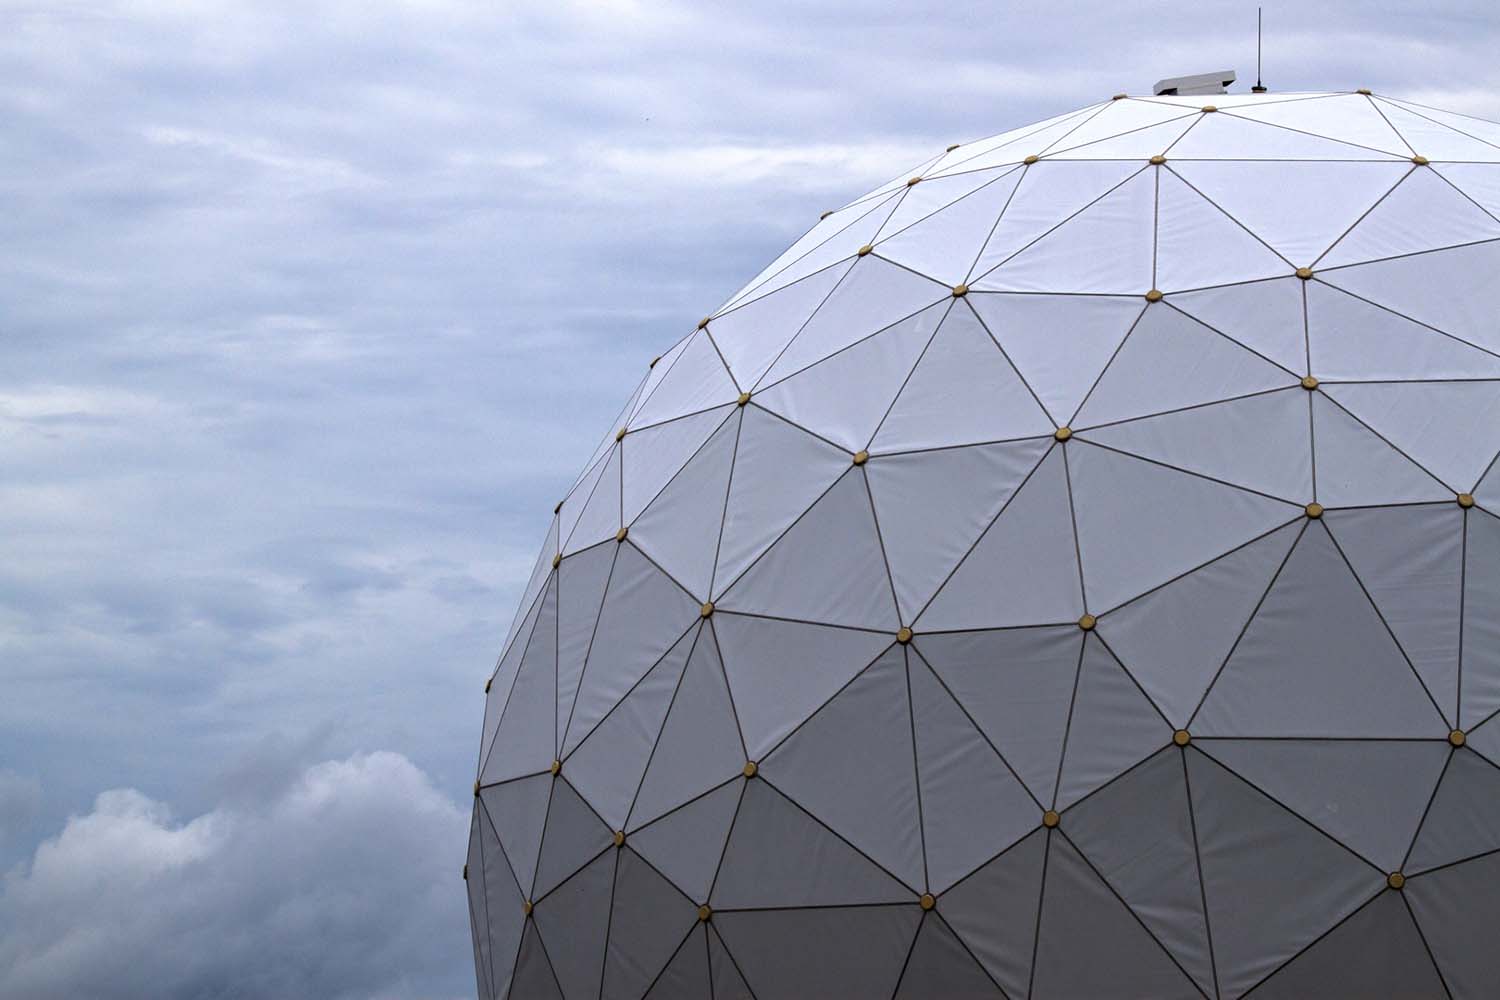 Radar dome facility